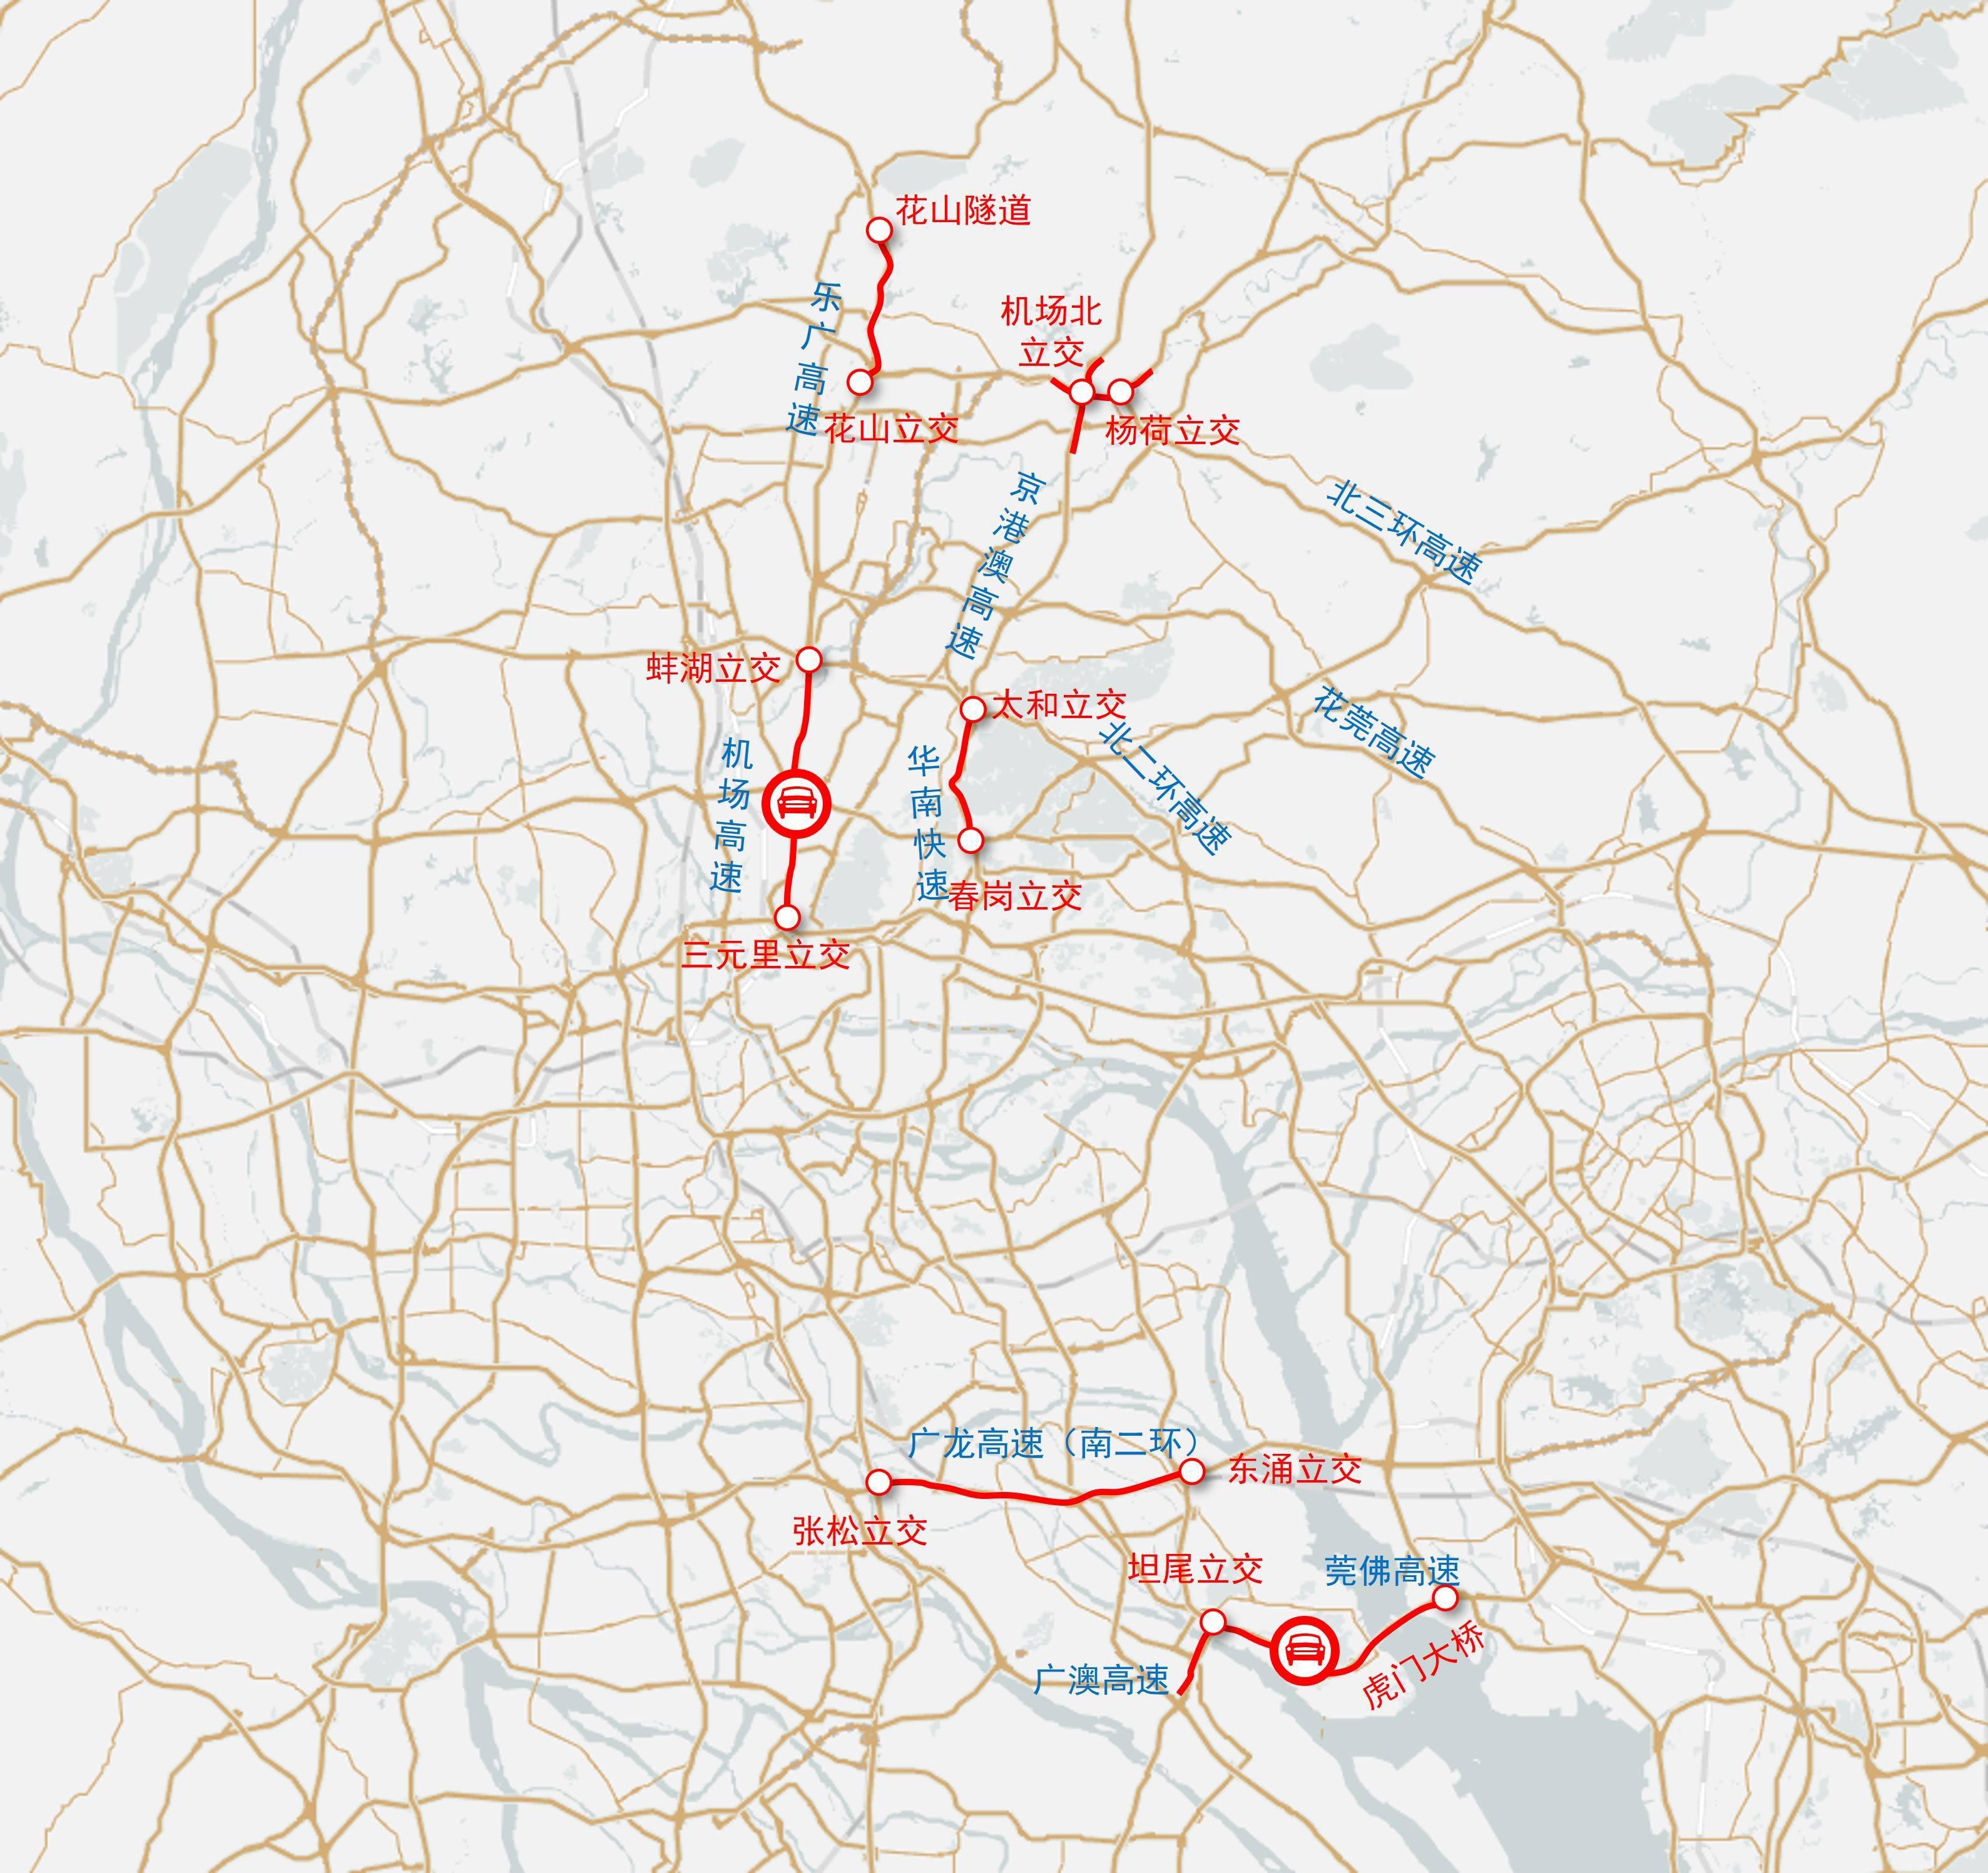 国庆节广州高速公路:预计9月30日14时-24时迎来第一波出城高峰